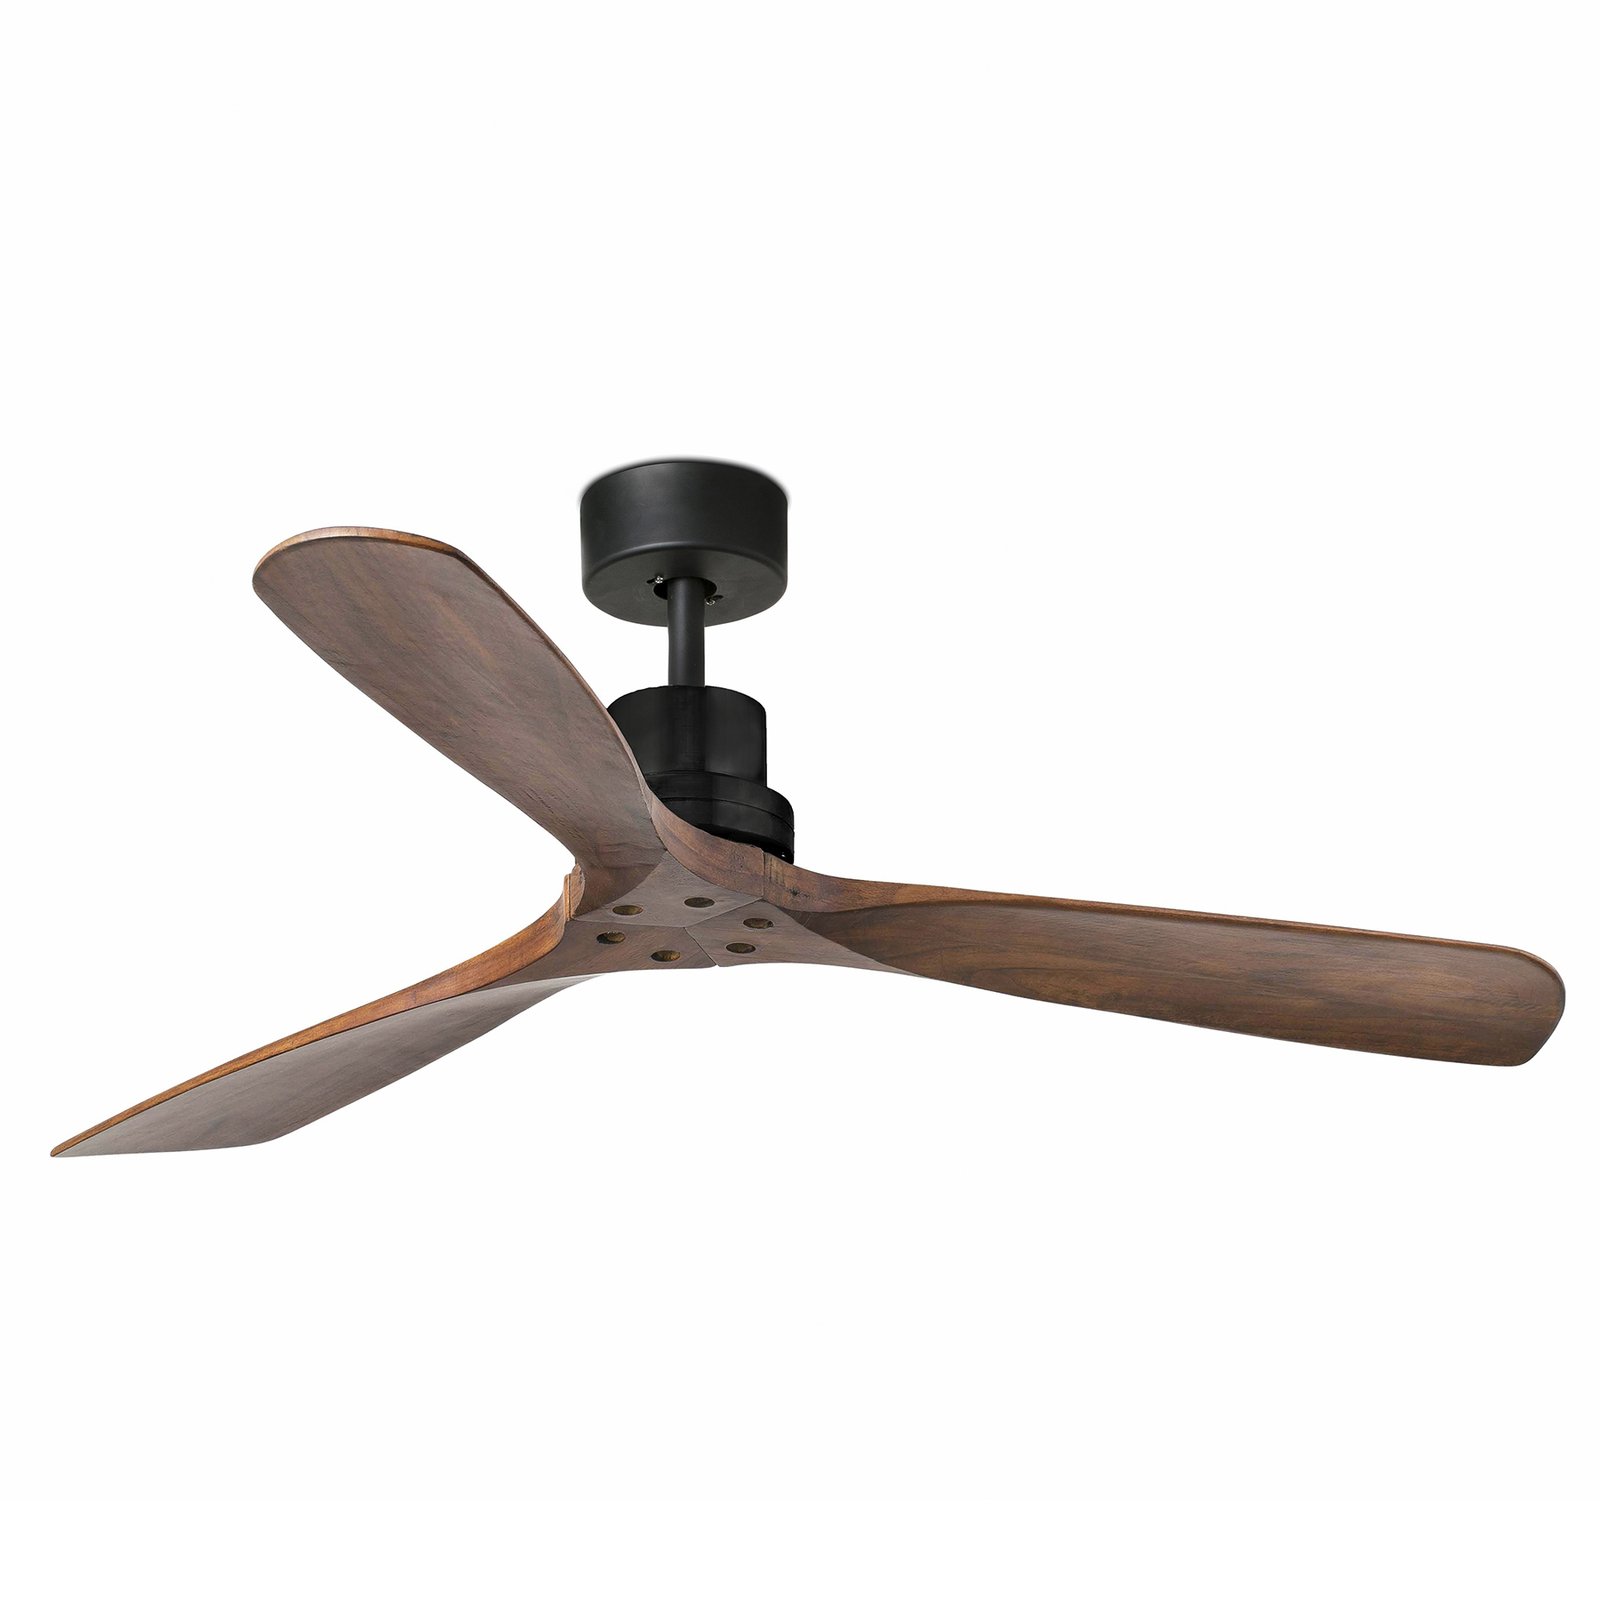 Lantau ceiling fan, remote, walnut/black